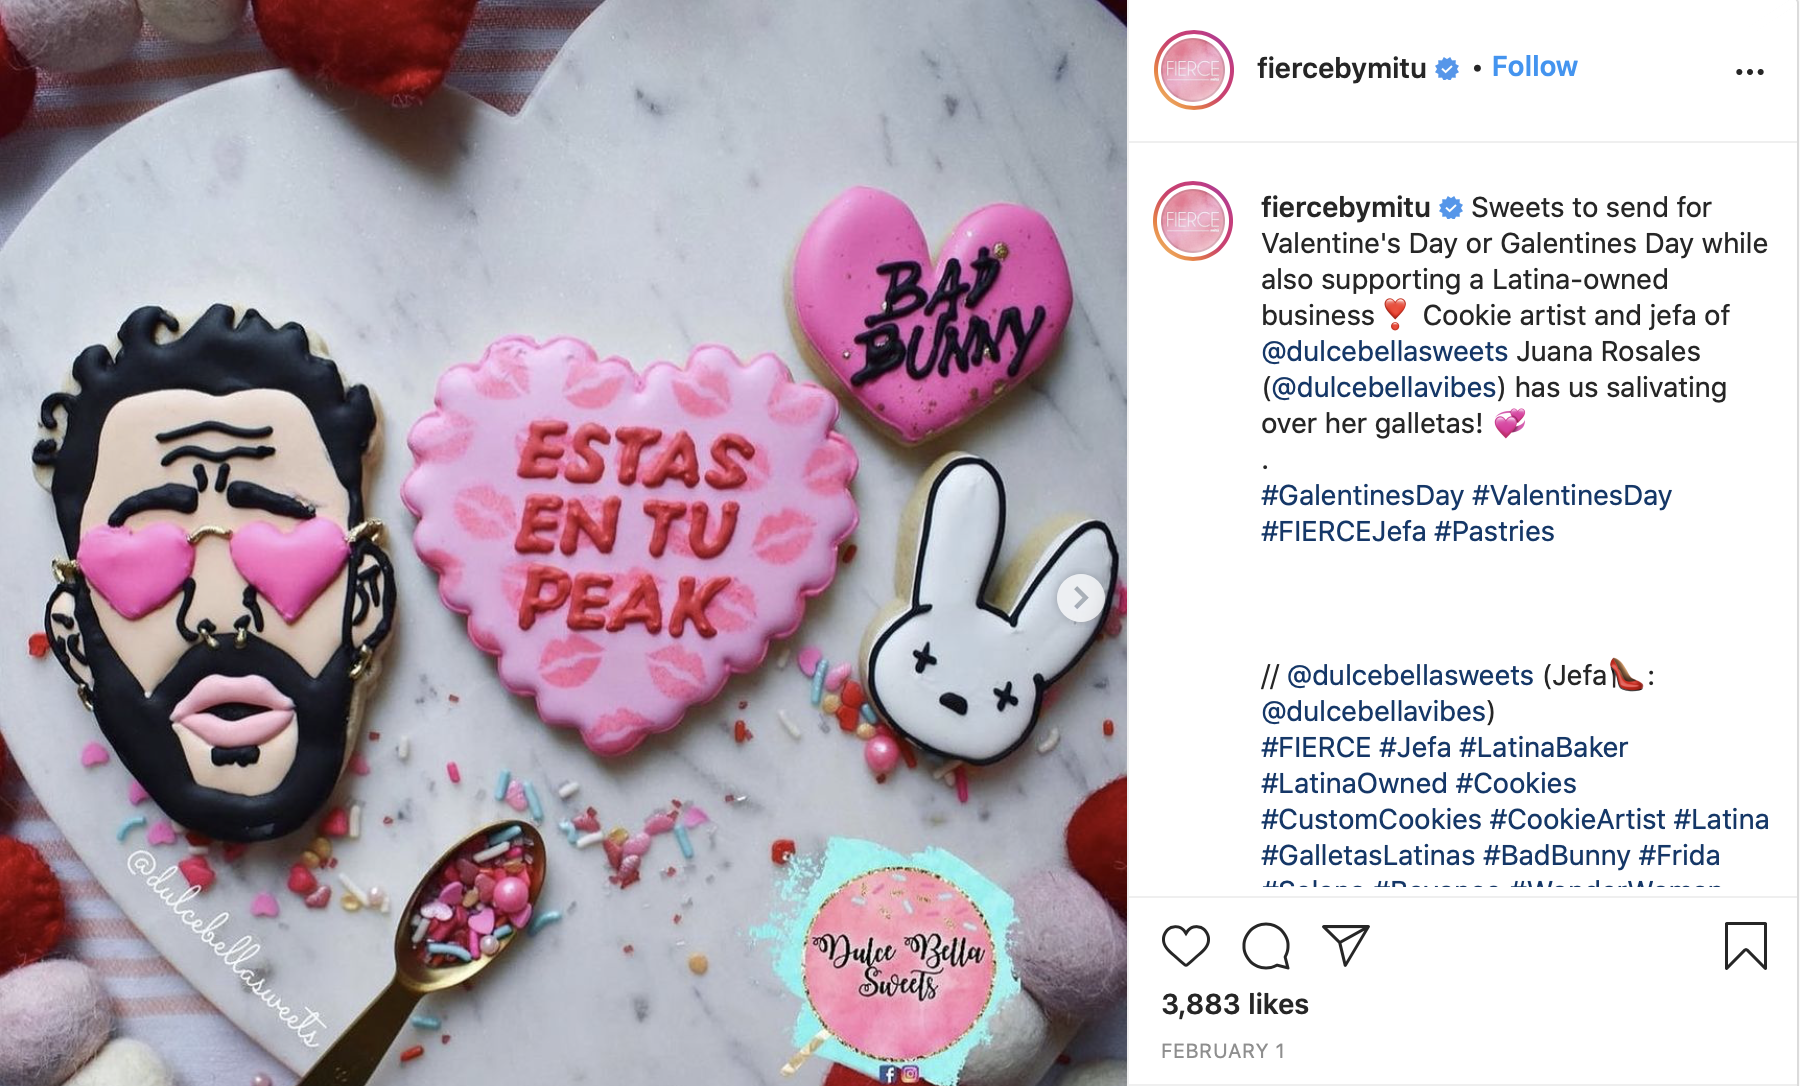  Screenshot from FIERCE by mitú Instagram repost of Rosales’s cookies 